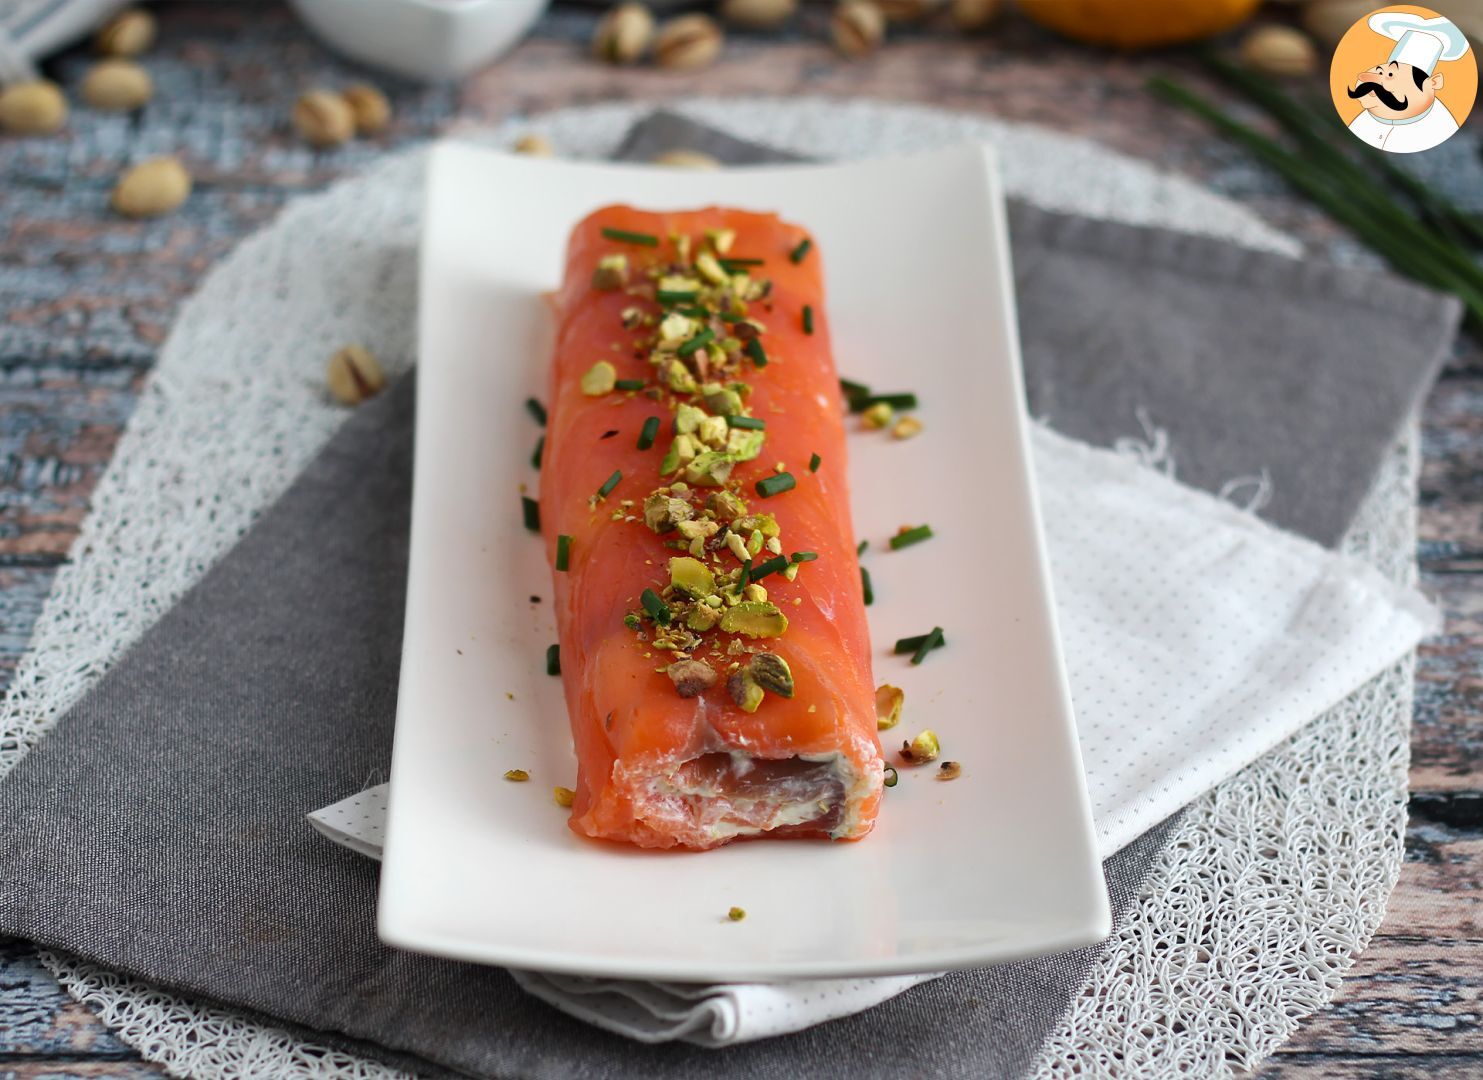 Tronco de salmón con queso ricotta y pistachos - Receta Petitchef